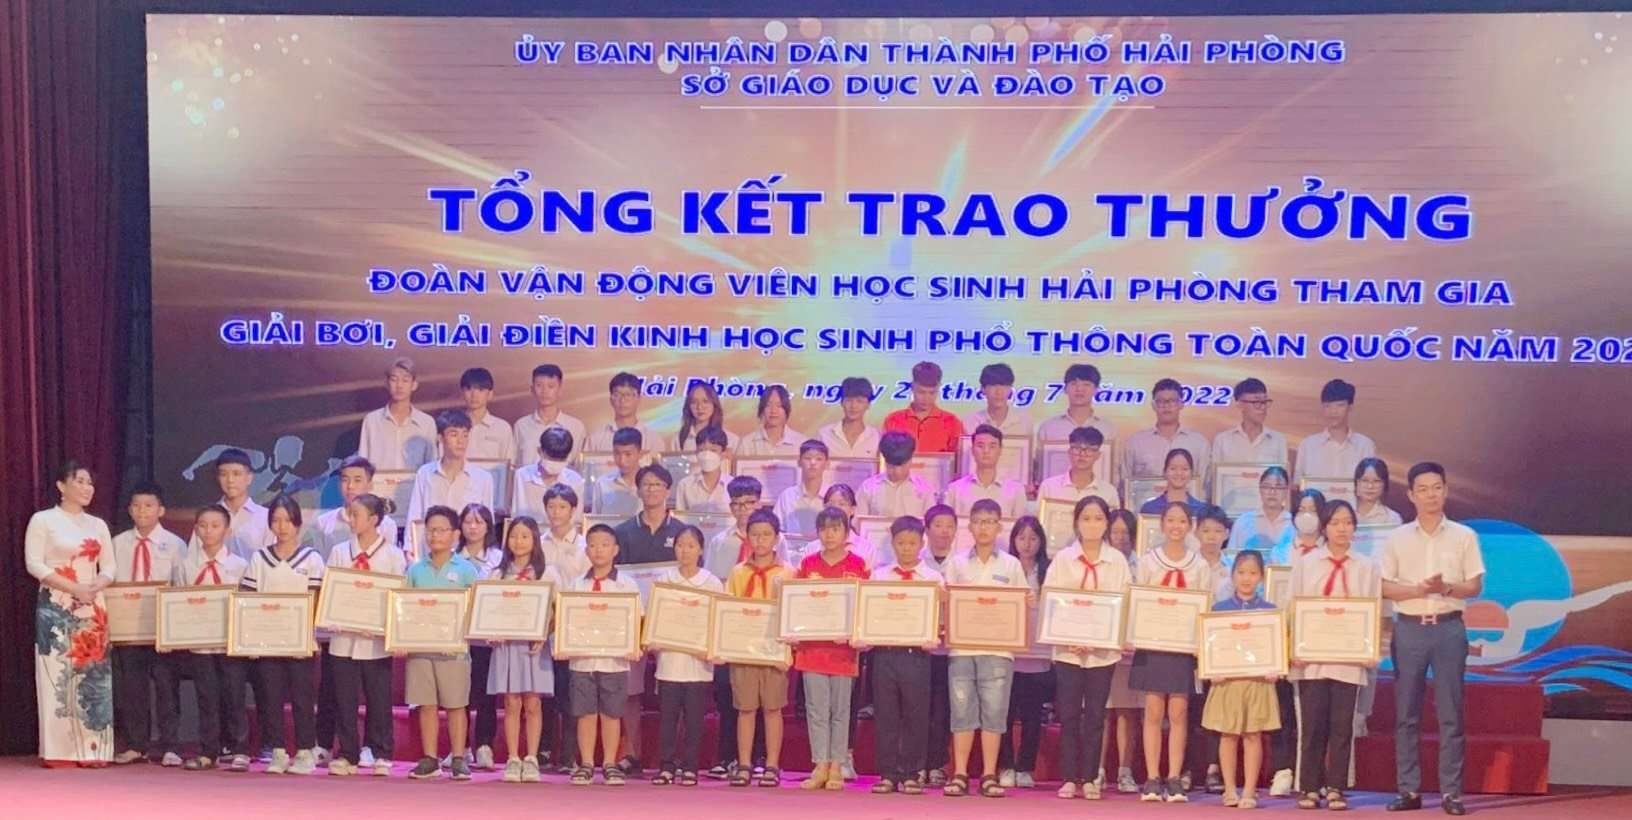 Chúc mừng em Phạm Văn Đăng Bảo đã đạt những thành tích cao trong các hội thi bơi lội của thành phố Hải Phòng năm 2022